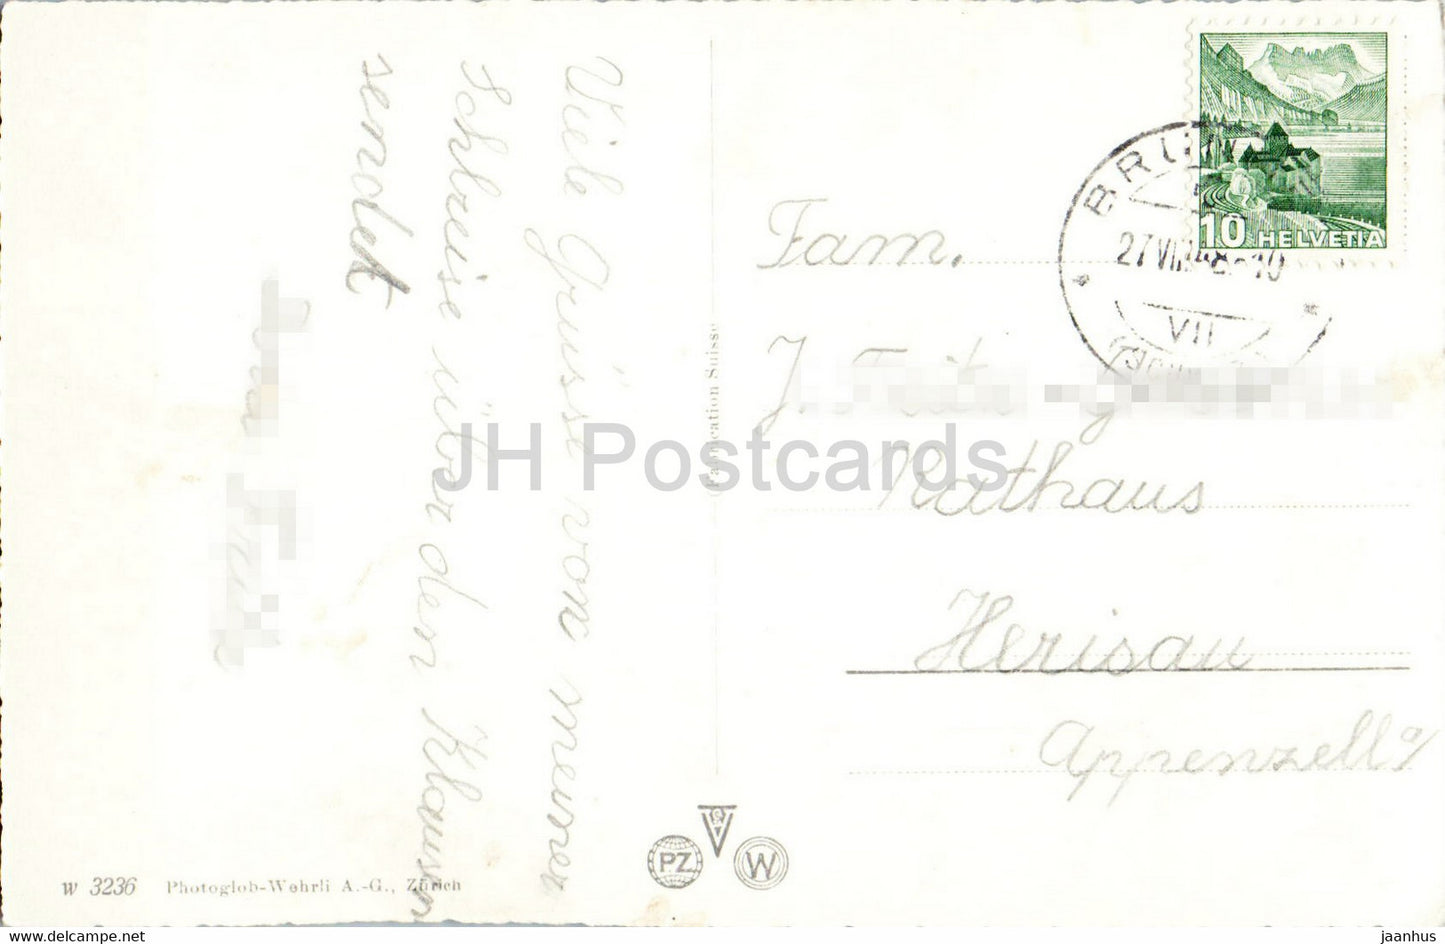 Altdorf - Dorfplatz mit Telldenkmal - monument - 3236 - 1948 - carte postale ancienne - Suisse - utilisé